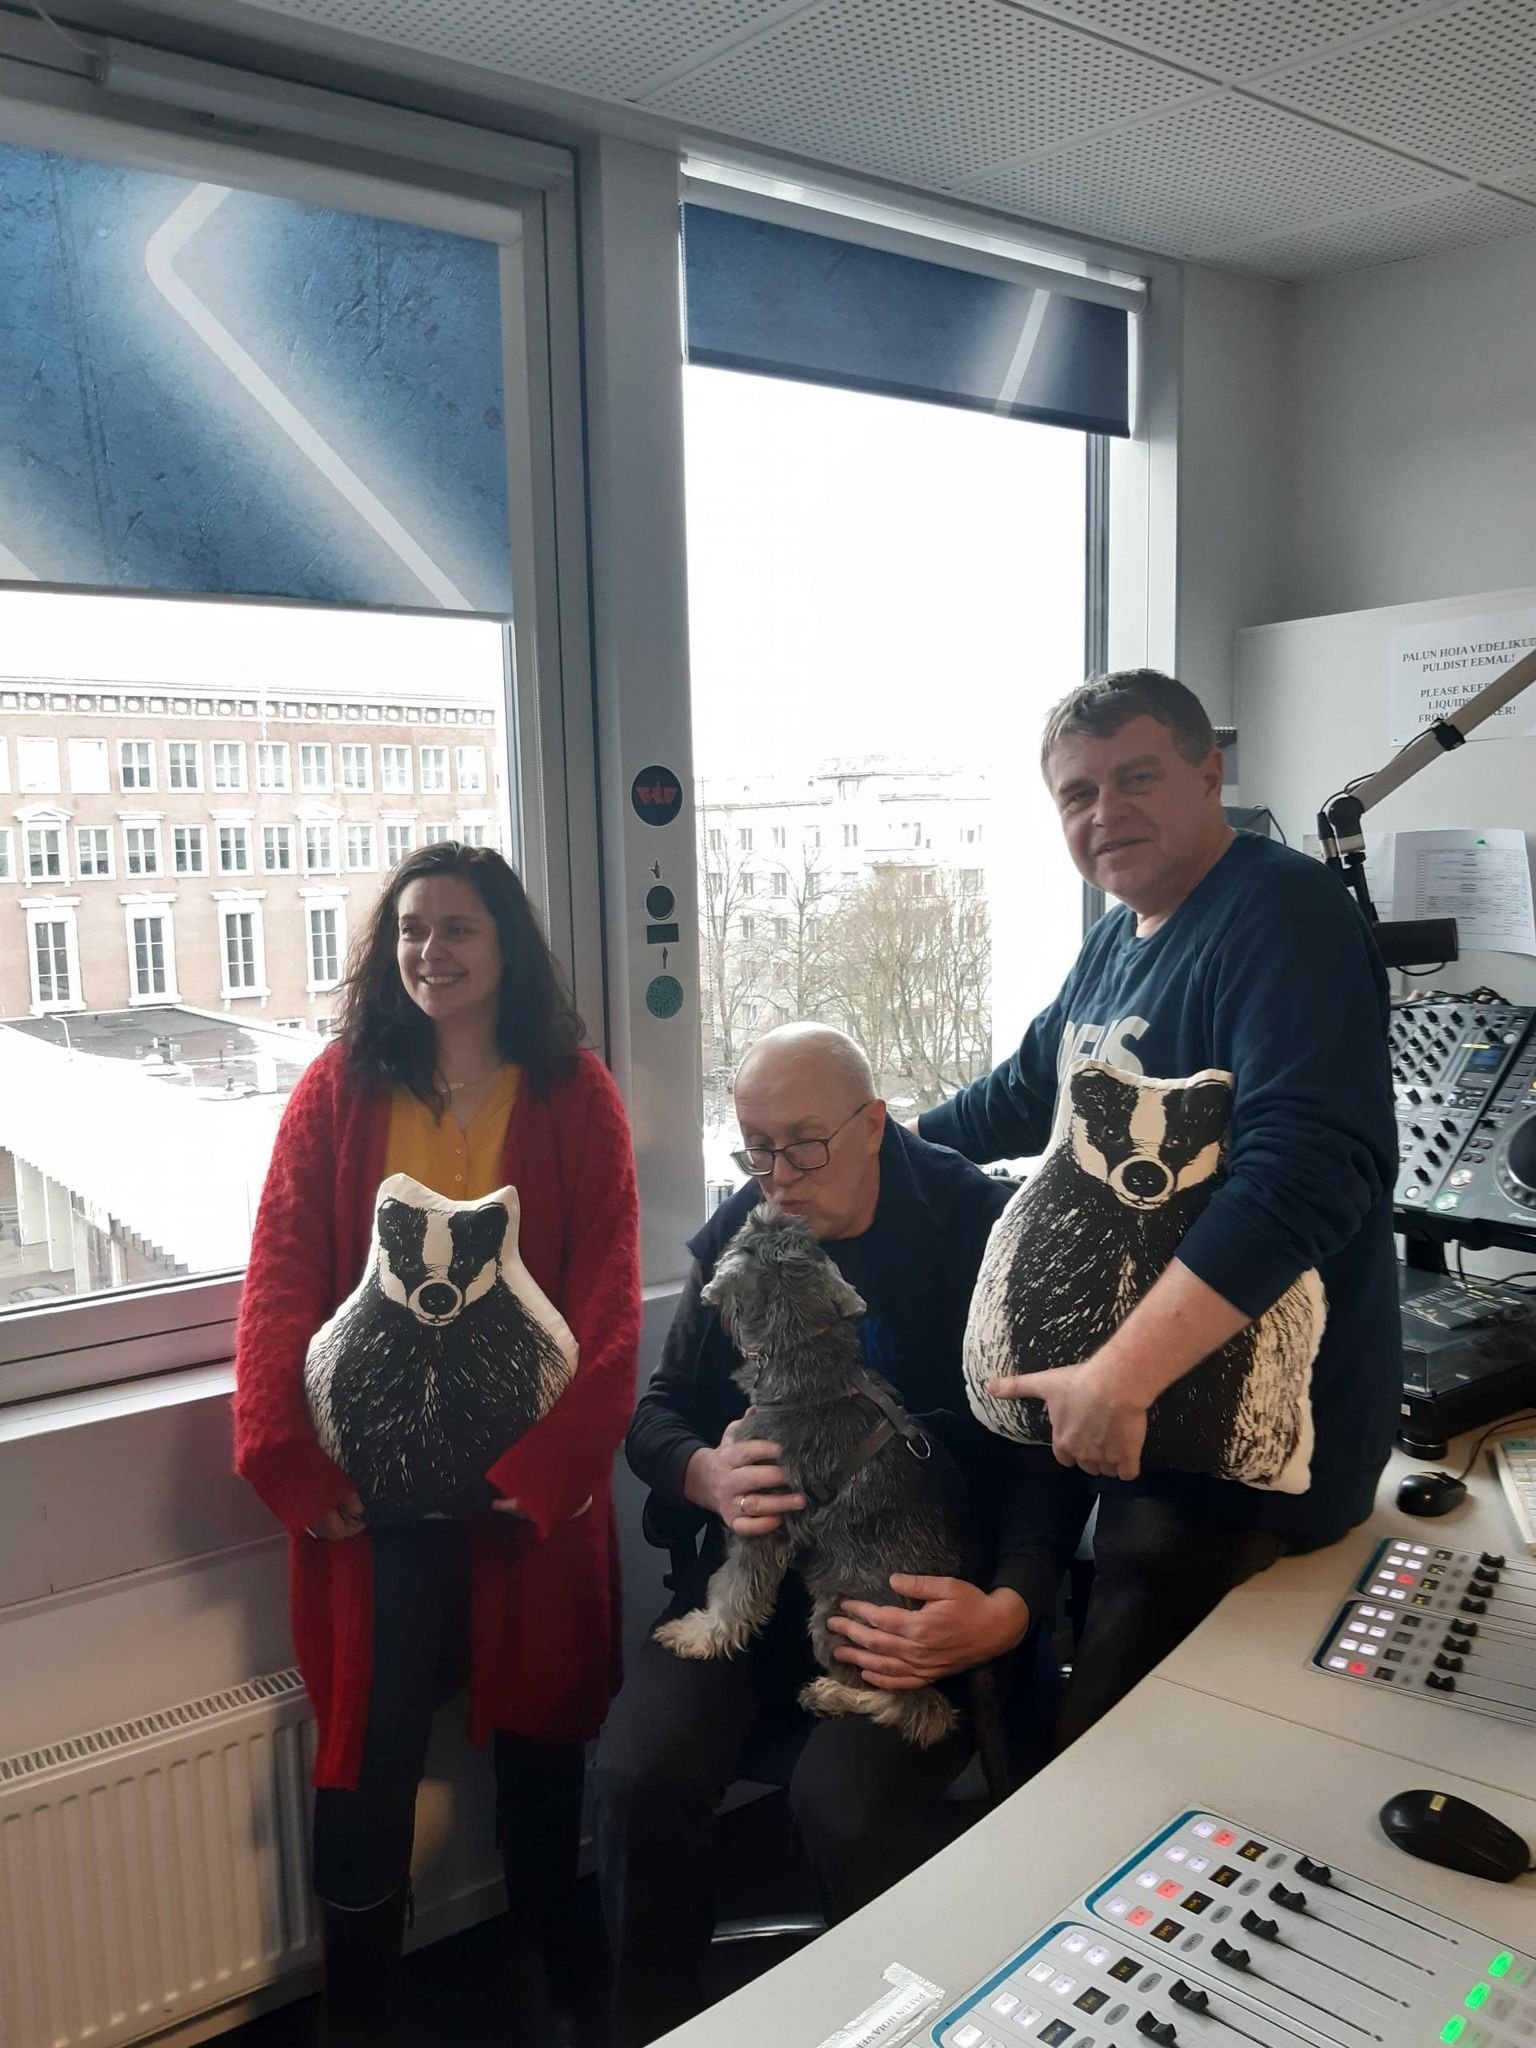 Anna-Kaisa Oidermaa, Mart Juur koer Rufusega ja Andrus Kivirähk auhinna üleandmisel Raadio2 stuudios. 